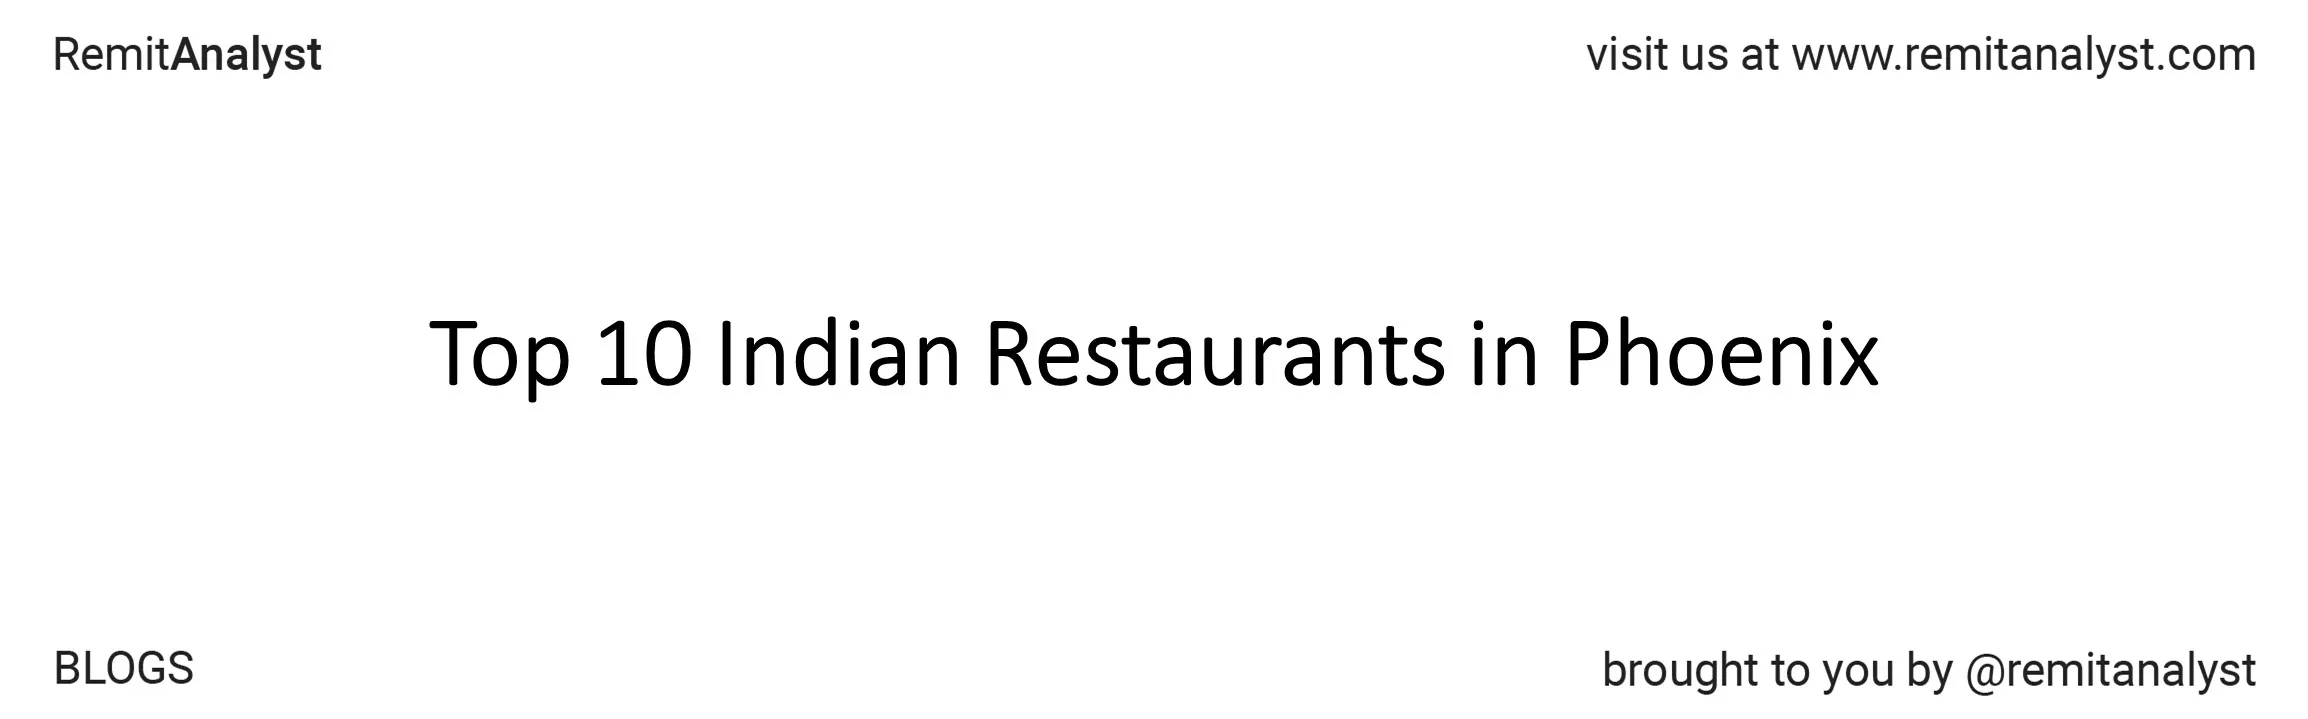 famous-indian-restaurants-phoenix-title